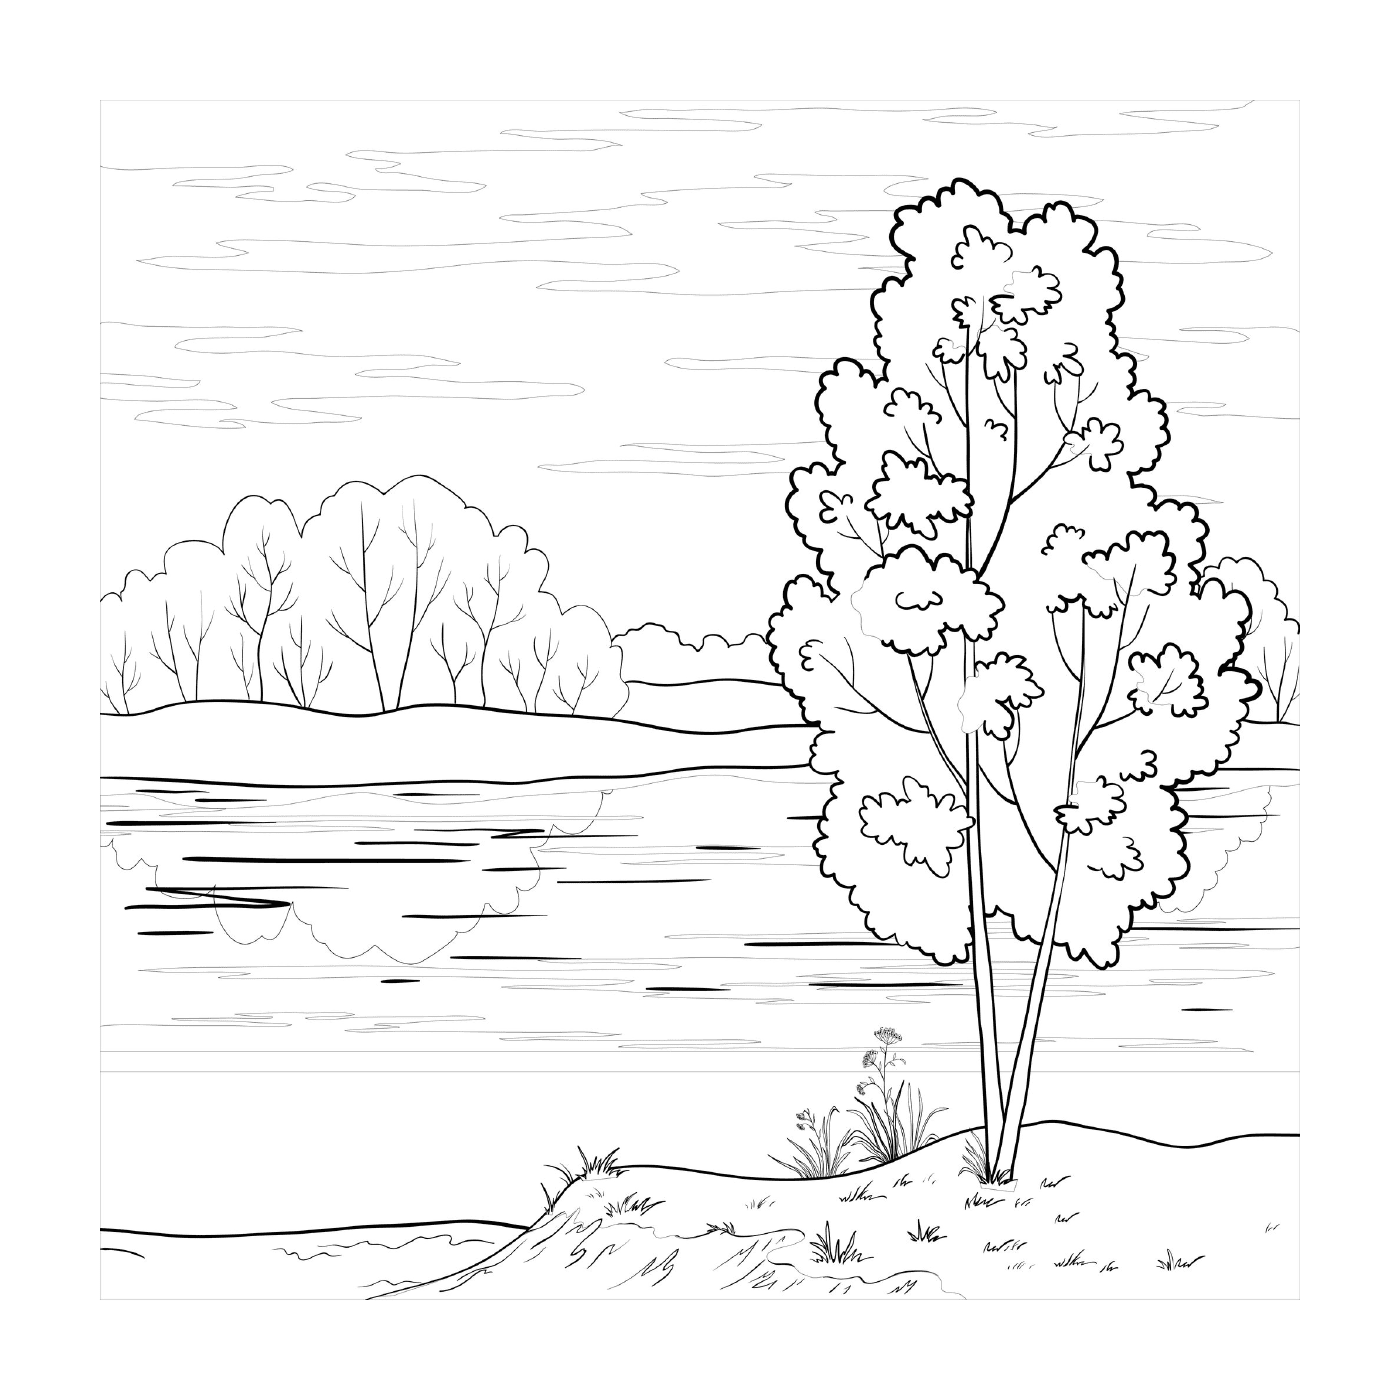  Ein Baum an einem See 